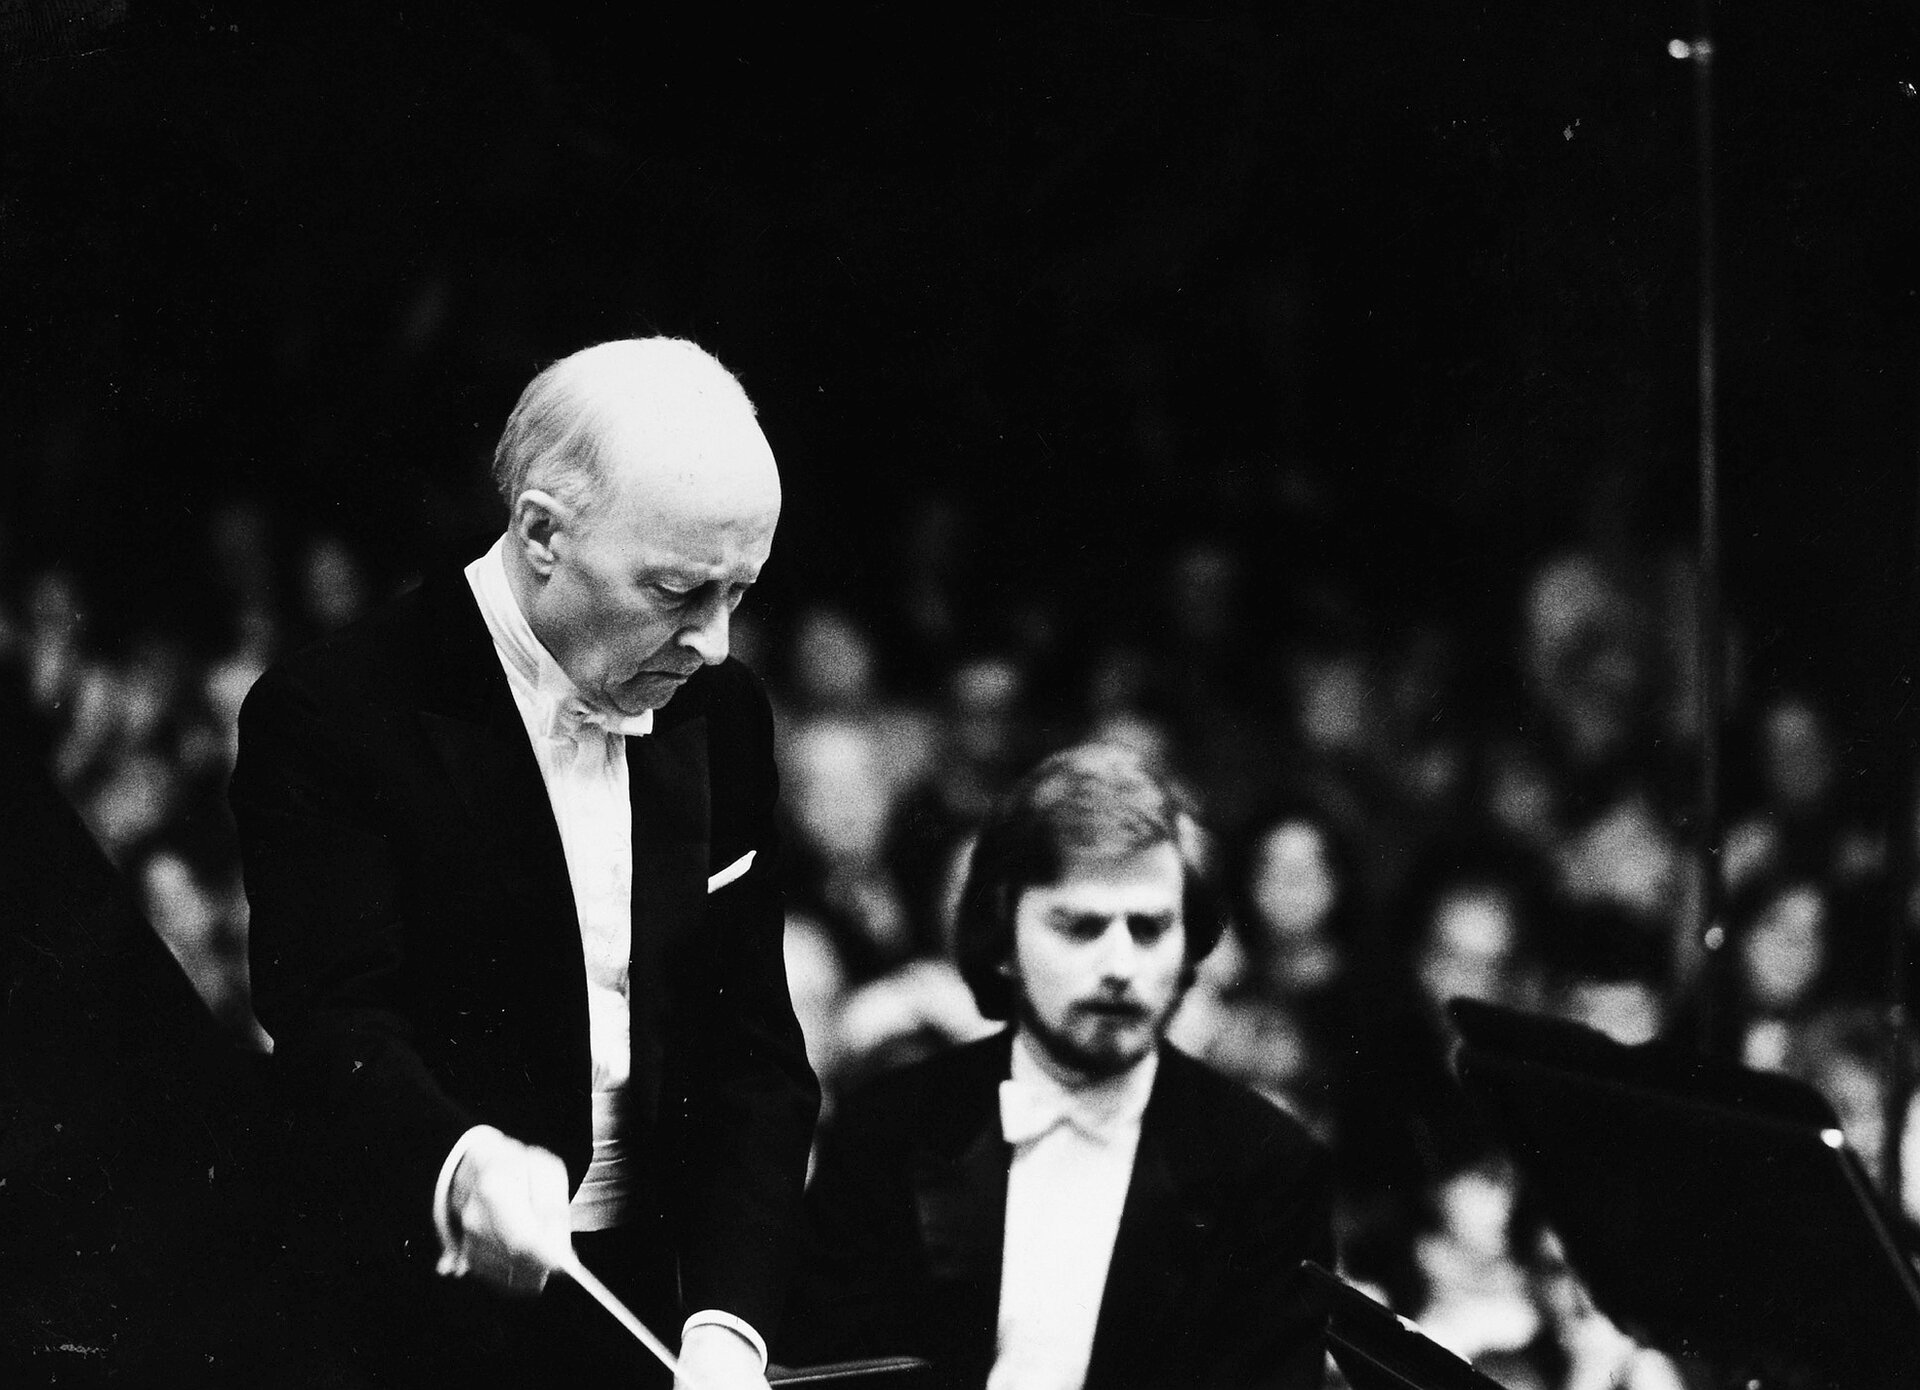 Na czarno-białym zdjęciu znajduje się Witold Lutosławski ukazany jako dyrygent. Ubrany jest w białą koszulę, czarny frak, pod szyją ma białą muchę, Kompozytor w ręku trzyma batutę. W tle widać niewyraźne sylwetki wielu ludzi.